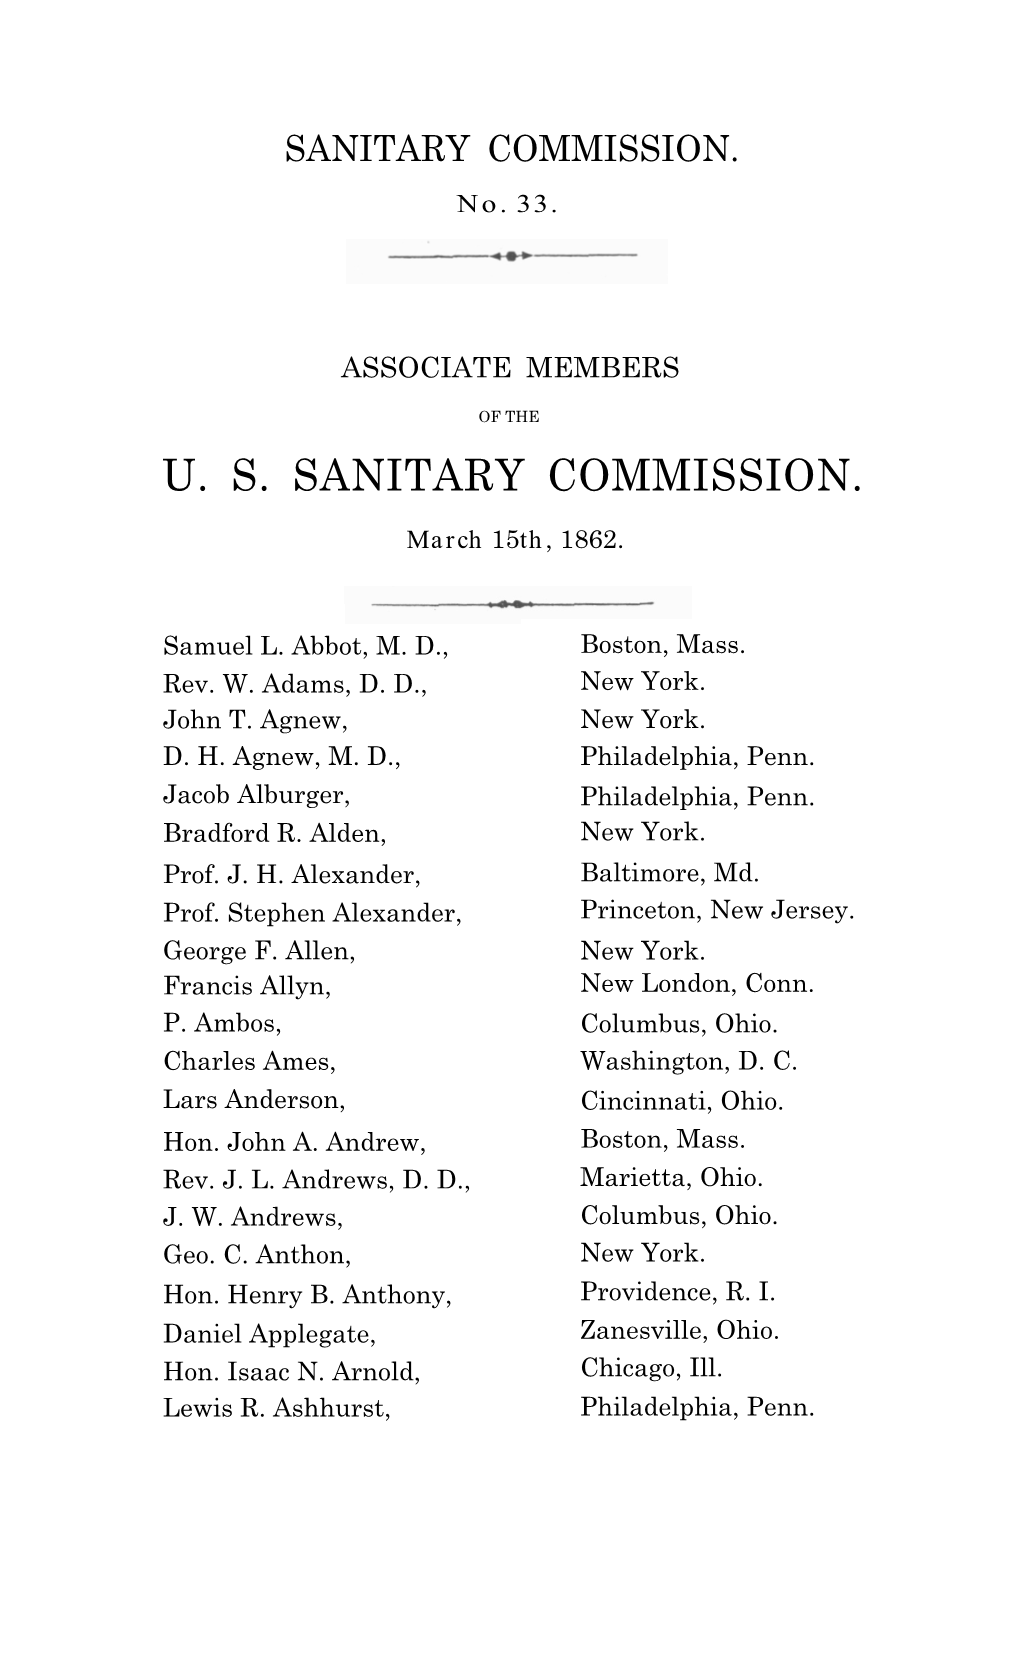 U. S. Sanitary Commission